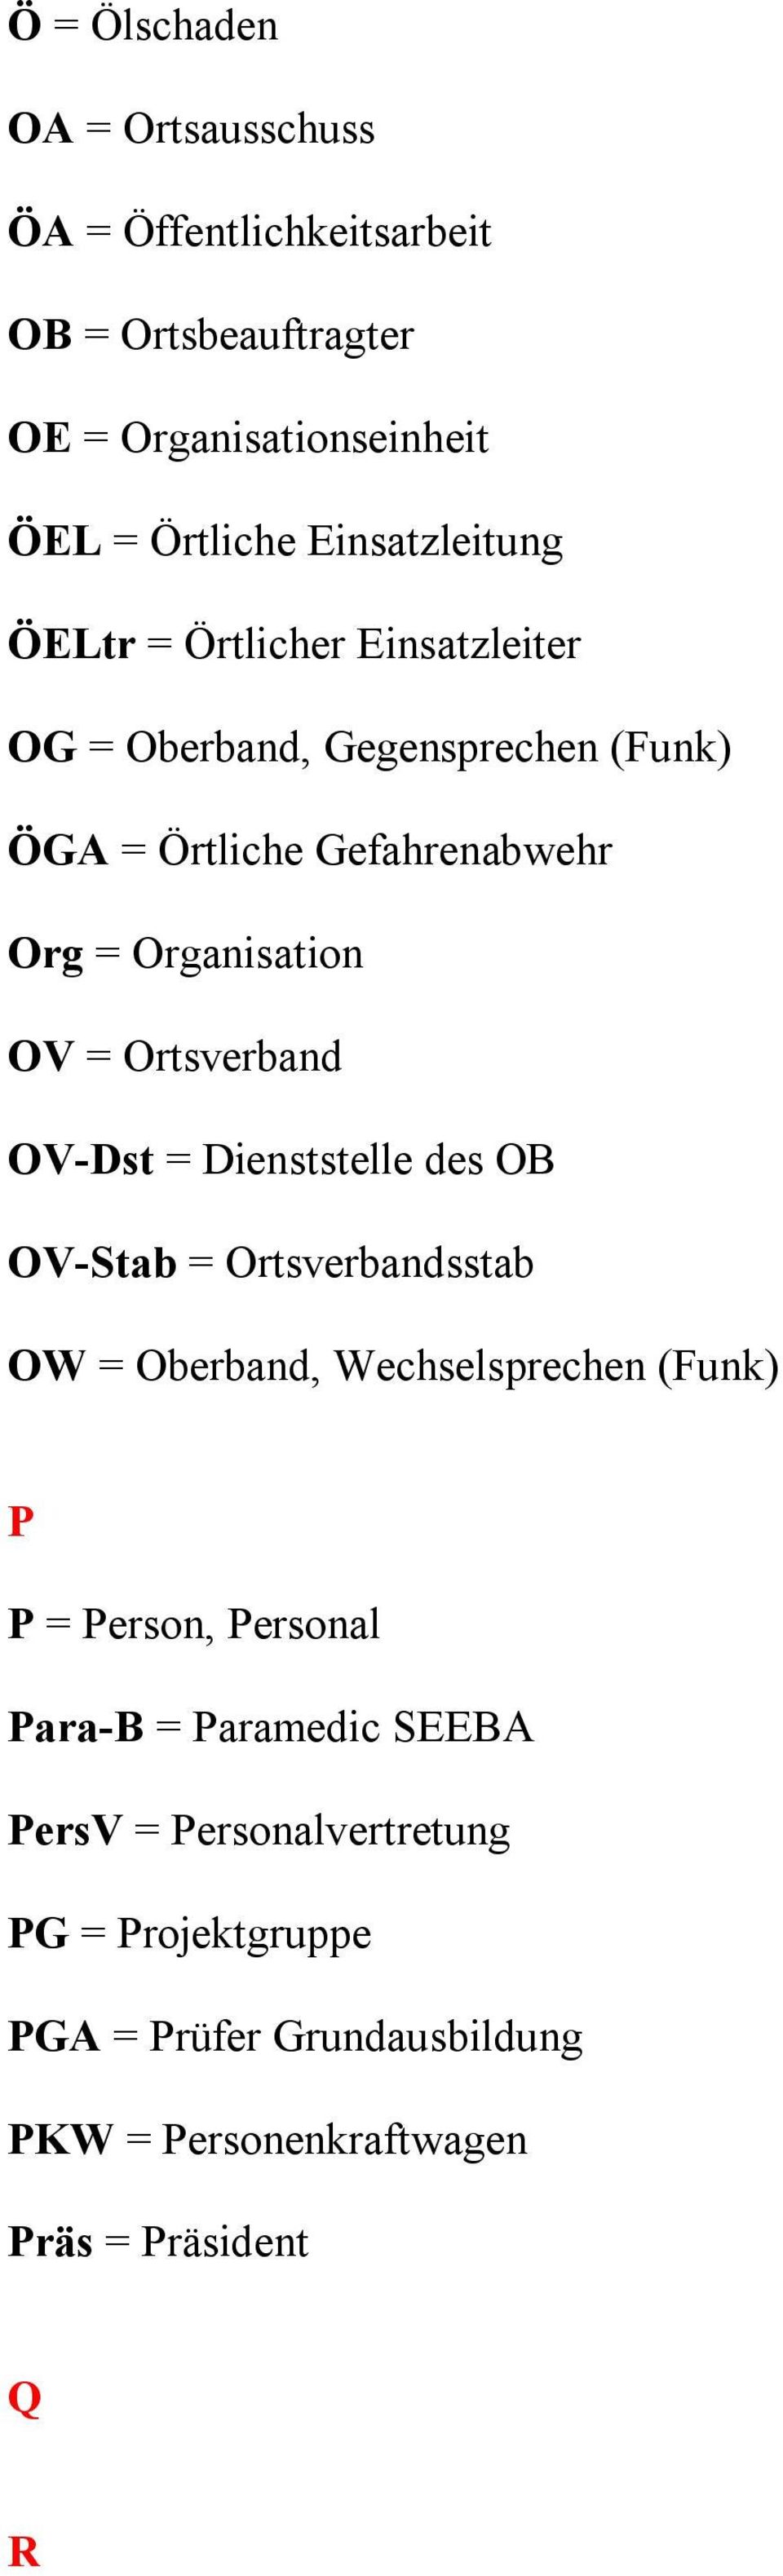 OV = Ortsverband OV-Dst = Dienststelle des OB OV-Stab = Ortsverbandsstab OW = Oberband, Wechselsprechen (Funk) P P = Person, Personal